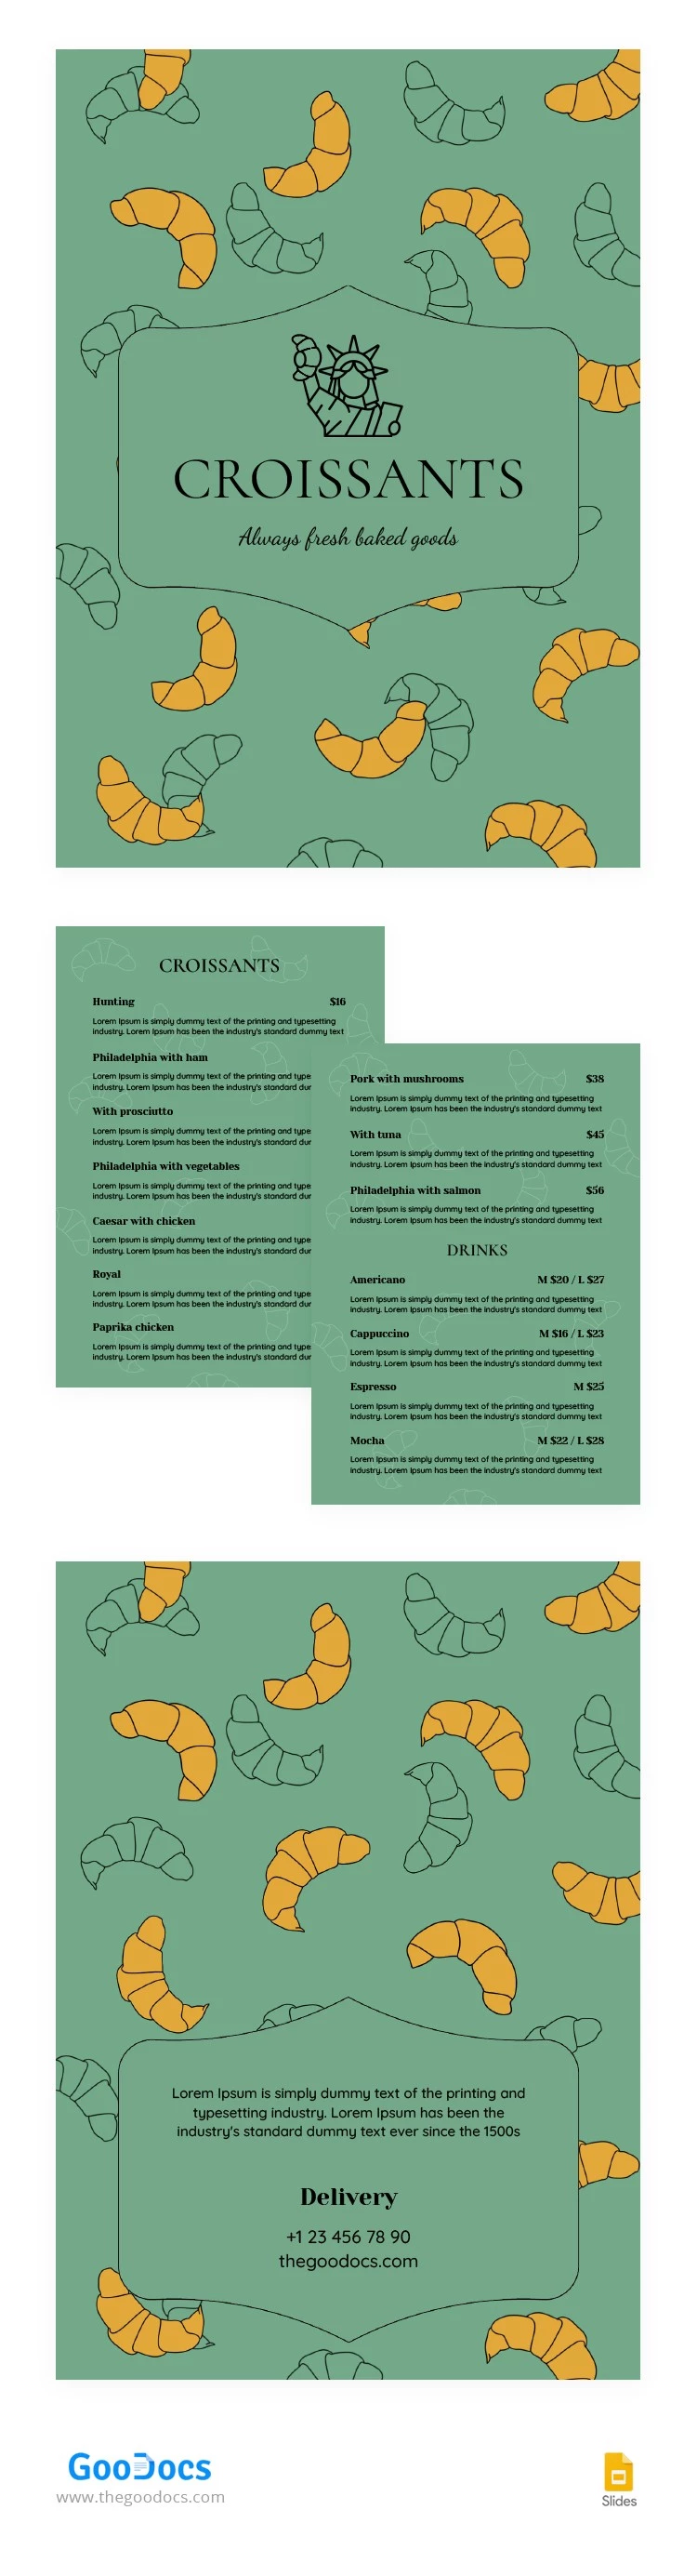 Menu de Croissants Verdes - free Google Docs Template - 10064813